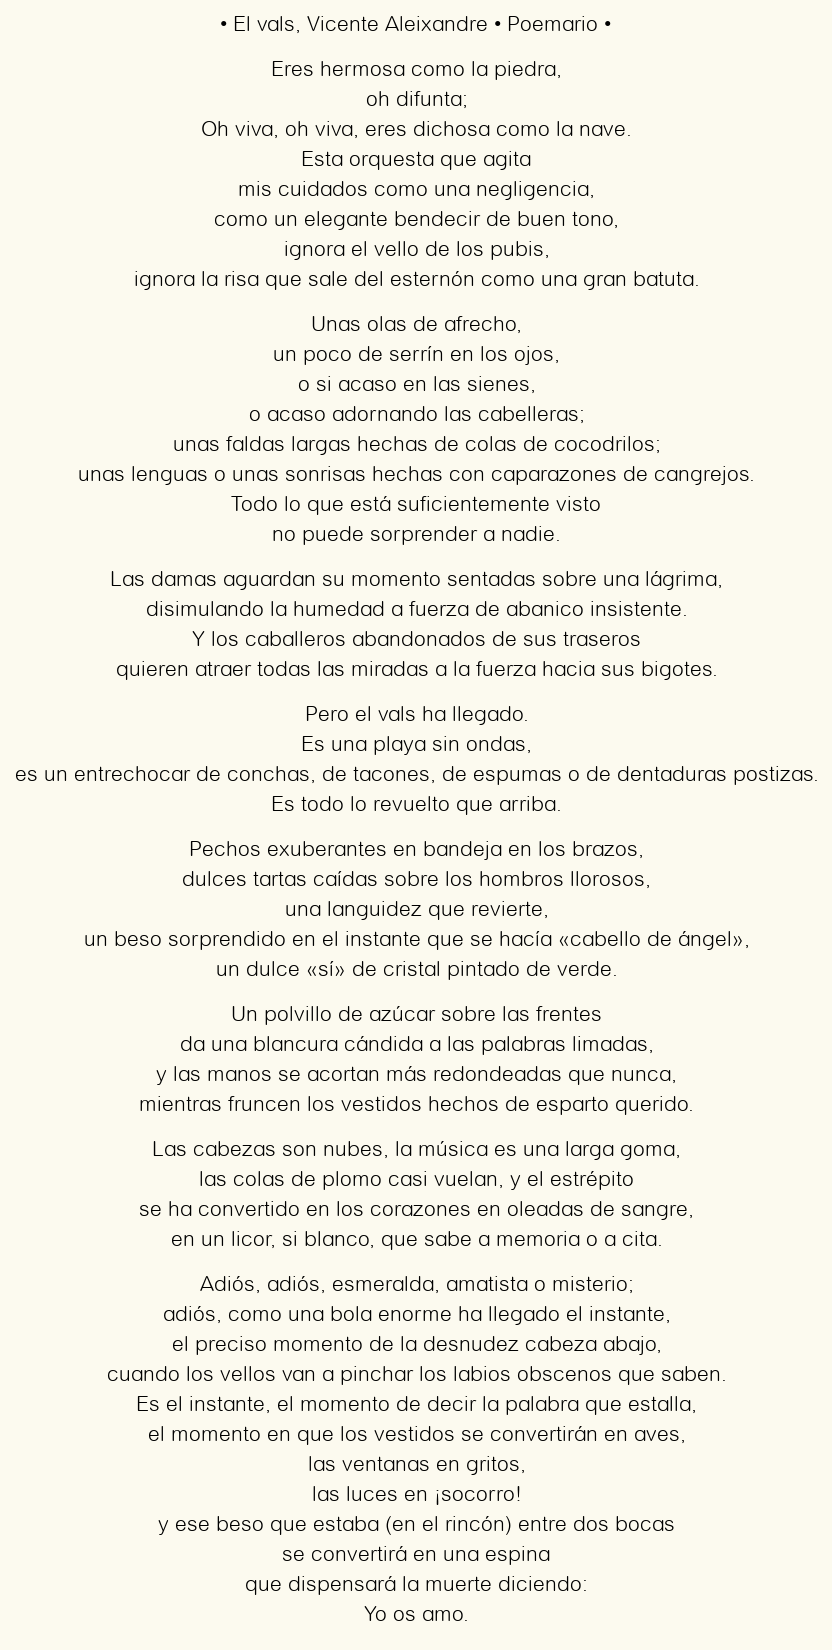 Imagen con el poema El vals, por Vicente Aleixandre